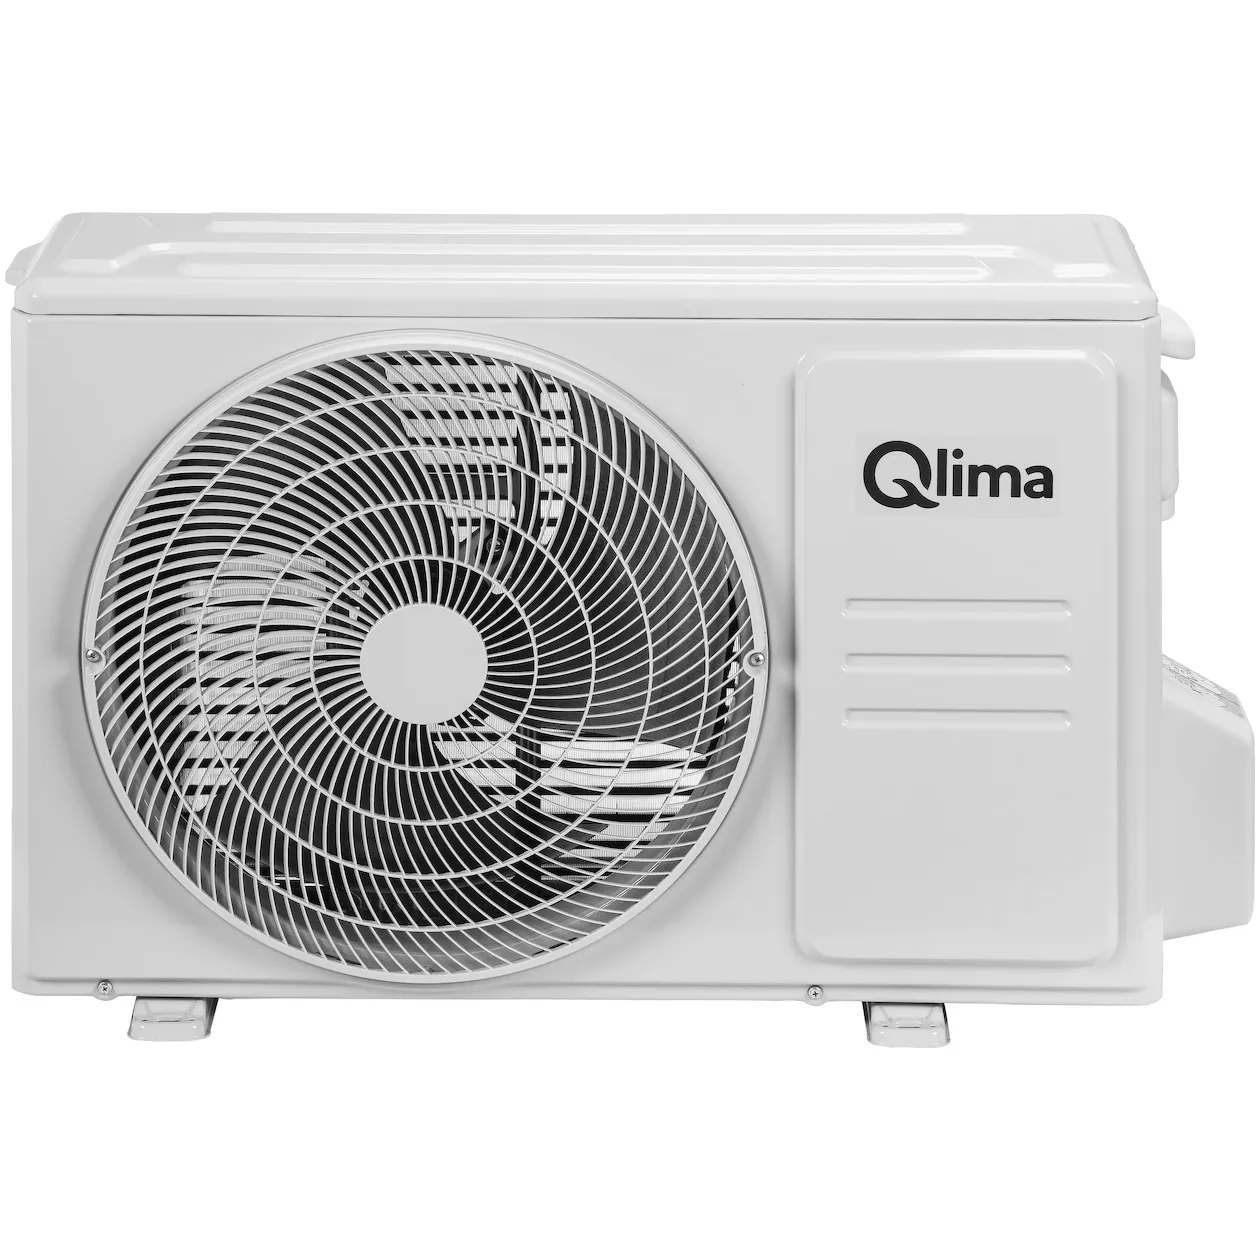 Qlima S 6035 compleet (zonder snelkoppeling)